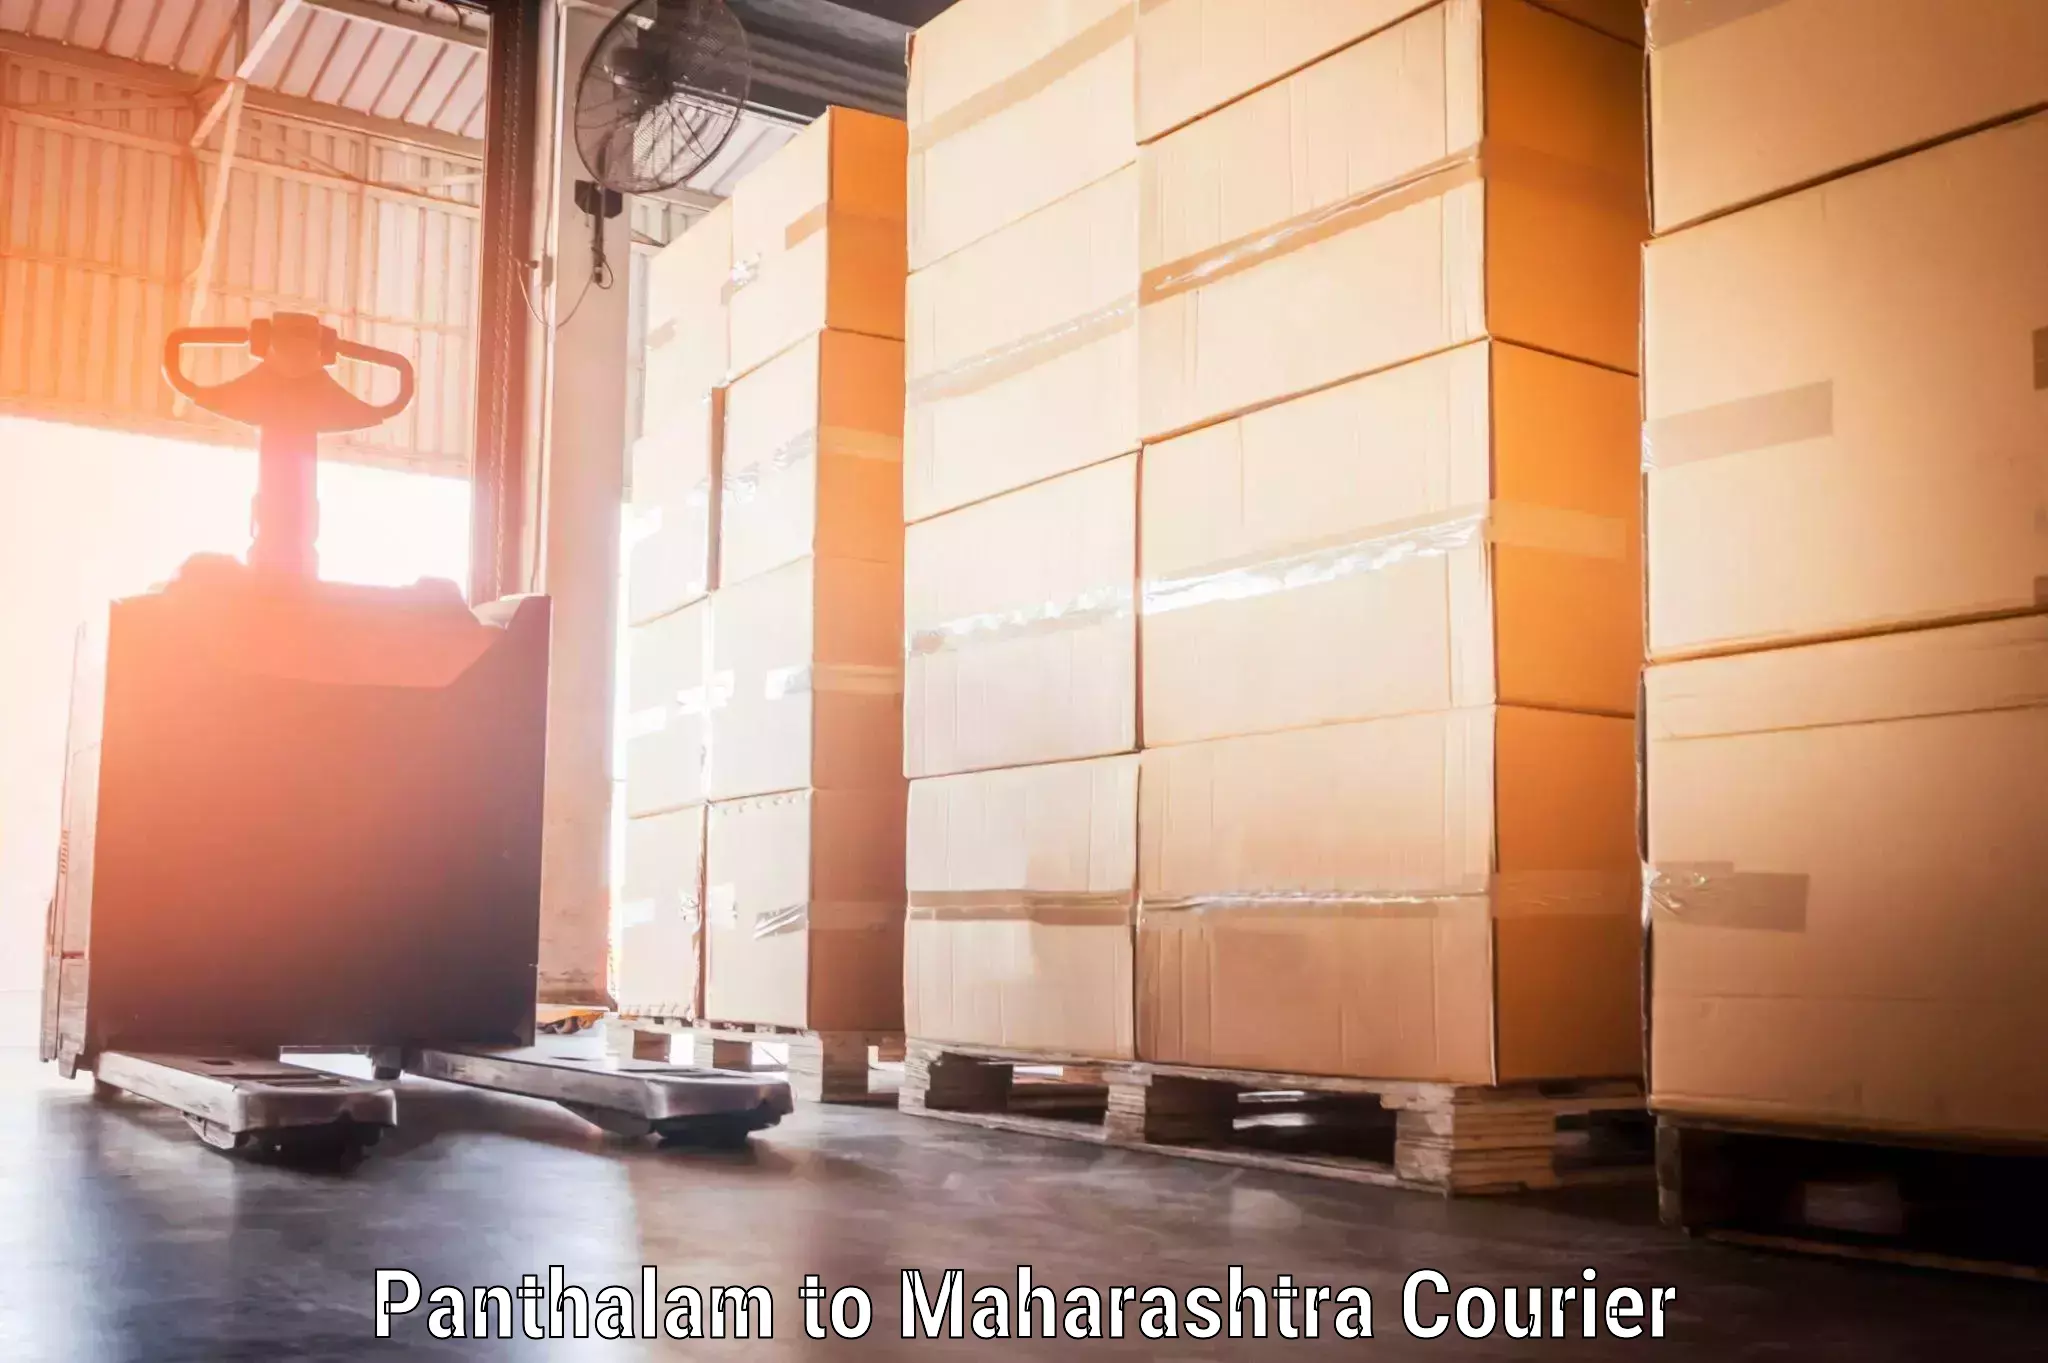 Baggage transport technology Panthalam to Mumbai Port